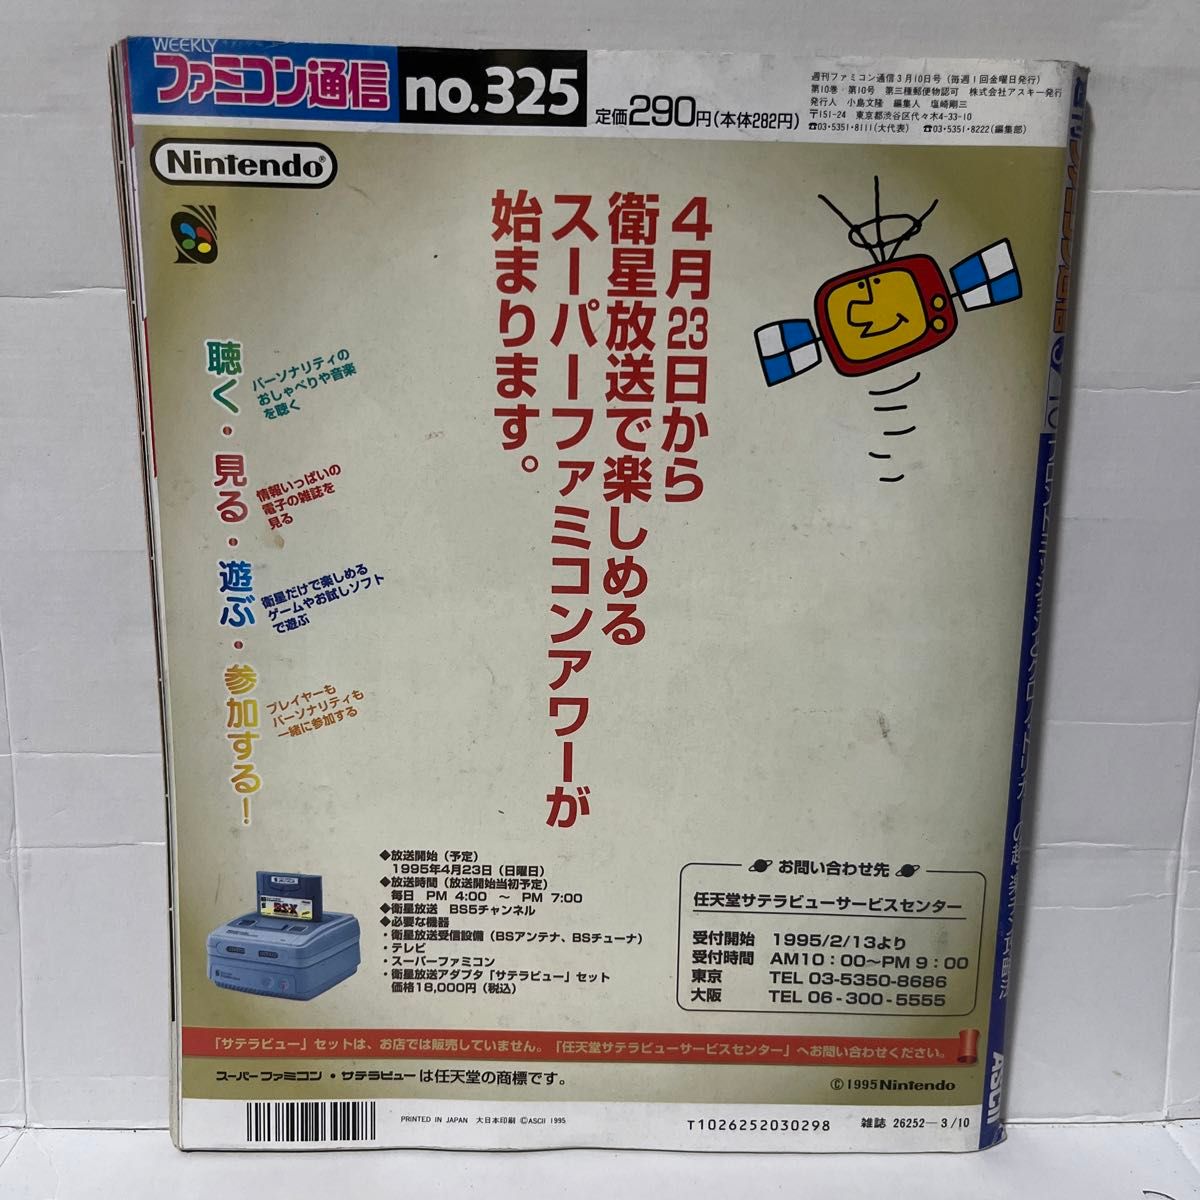 【レア】82.WEEKLY ファミコン通信 1995 3.10 no.325